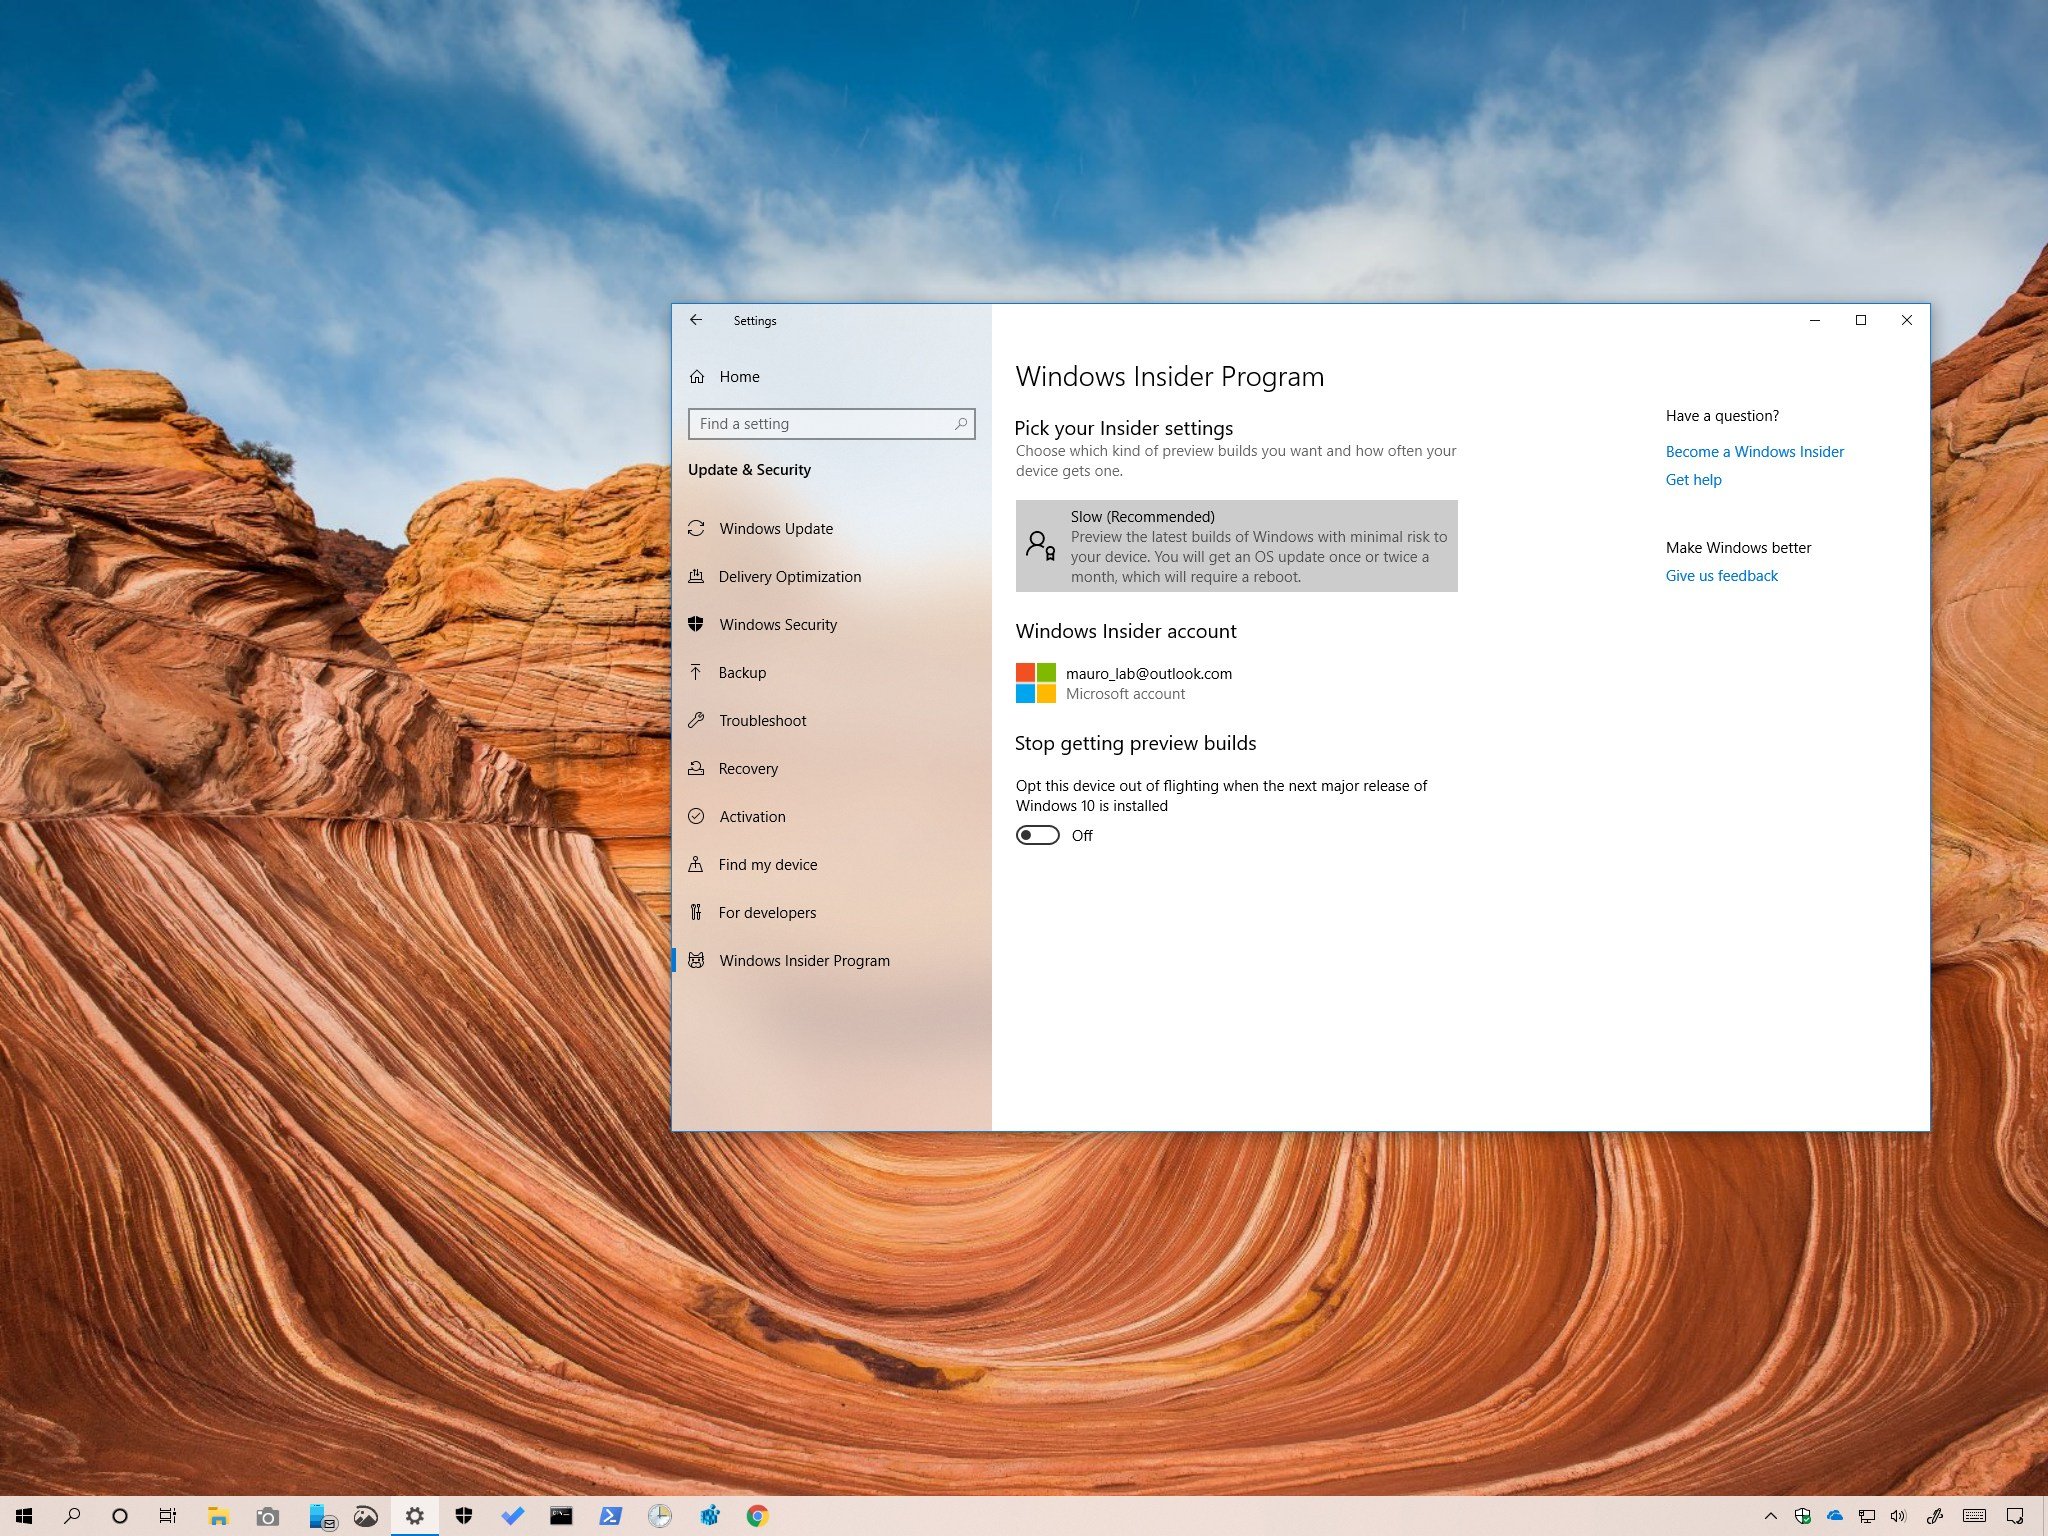 Nếu bạn yêu thích công nghệ và muốn cập nhật công nghệ mới nhất từ Microsoft, thì Windows Insider là chương trình vô cùng hữu ích. Đăng ký PC của bạn vào chương trình với phiên bản tháng 5 để trải nghiệm những tính năng mới và độc đáo của Windows. Hãy xem ảnh liên quan để biết cách đăng ký và trải nghiệm!